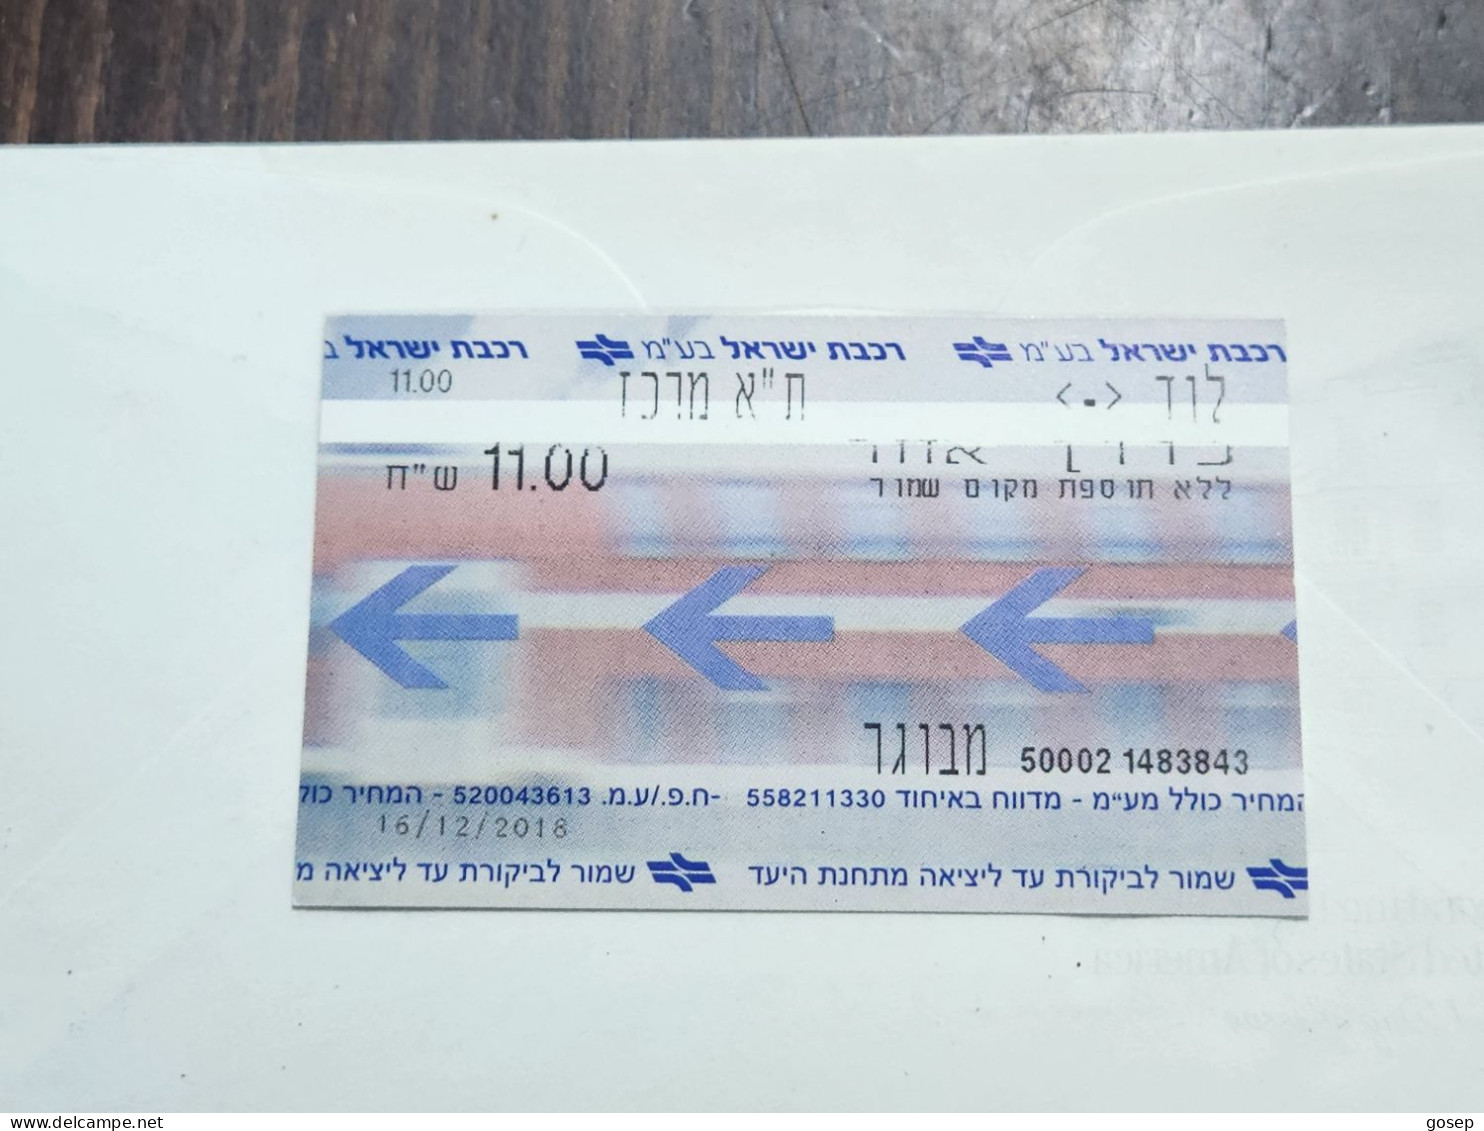 ISRAEL-Israel Railways Ltd-Tel-Aviv Center-Lod-Tel Aviv Center-(1483843)-adult-(21)-16.12.2018-(11.00₪)-good - Spoorweg